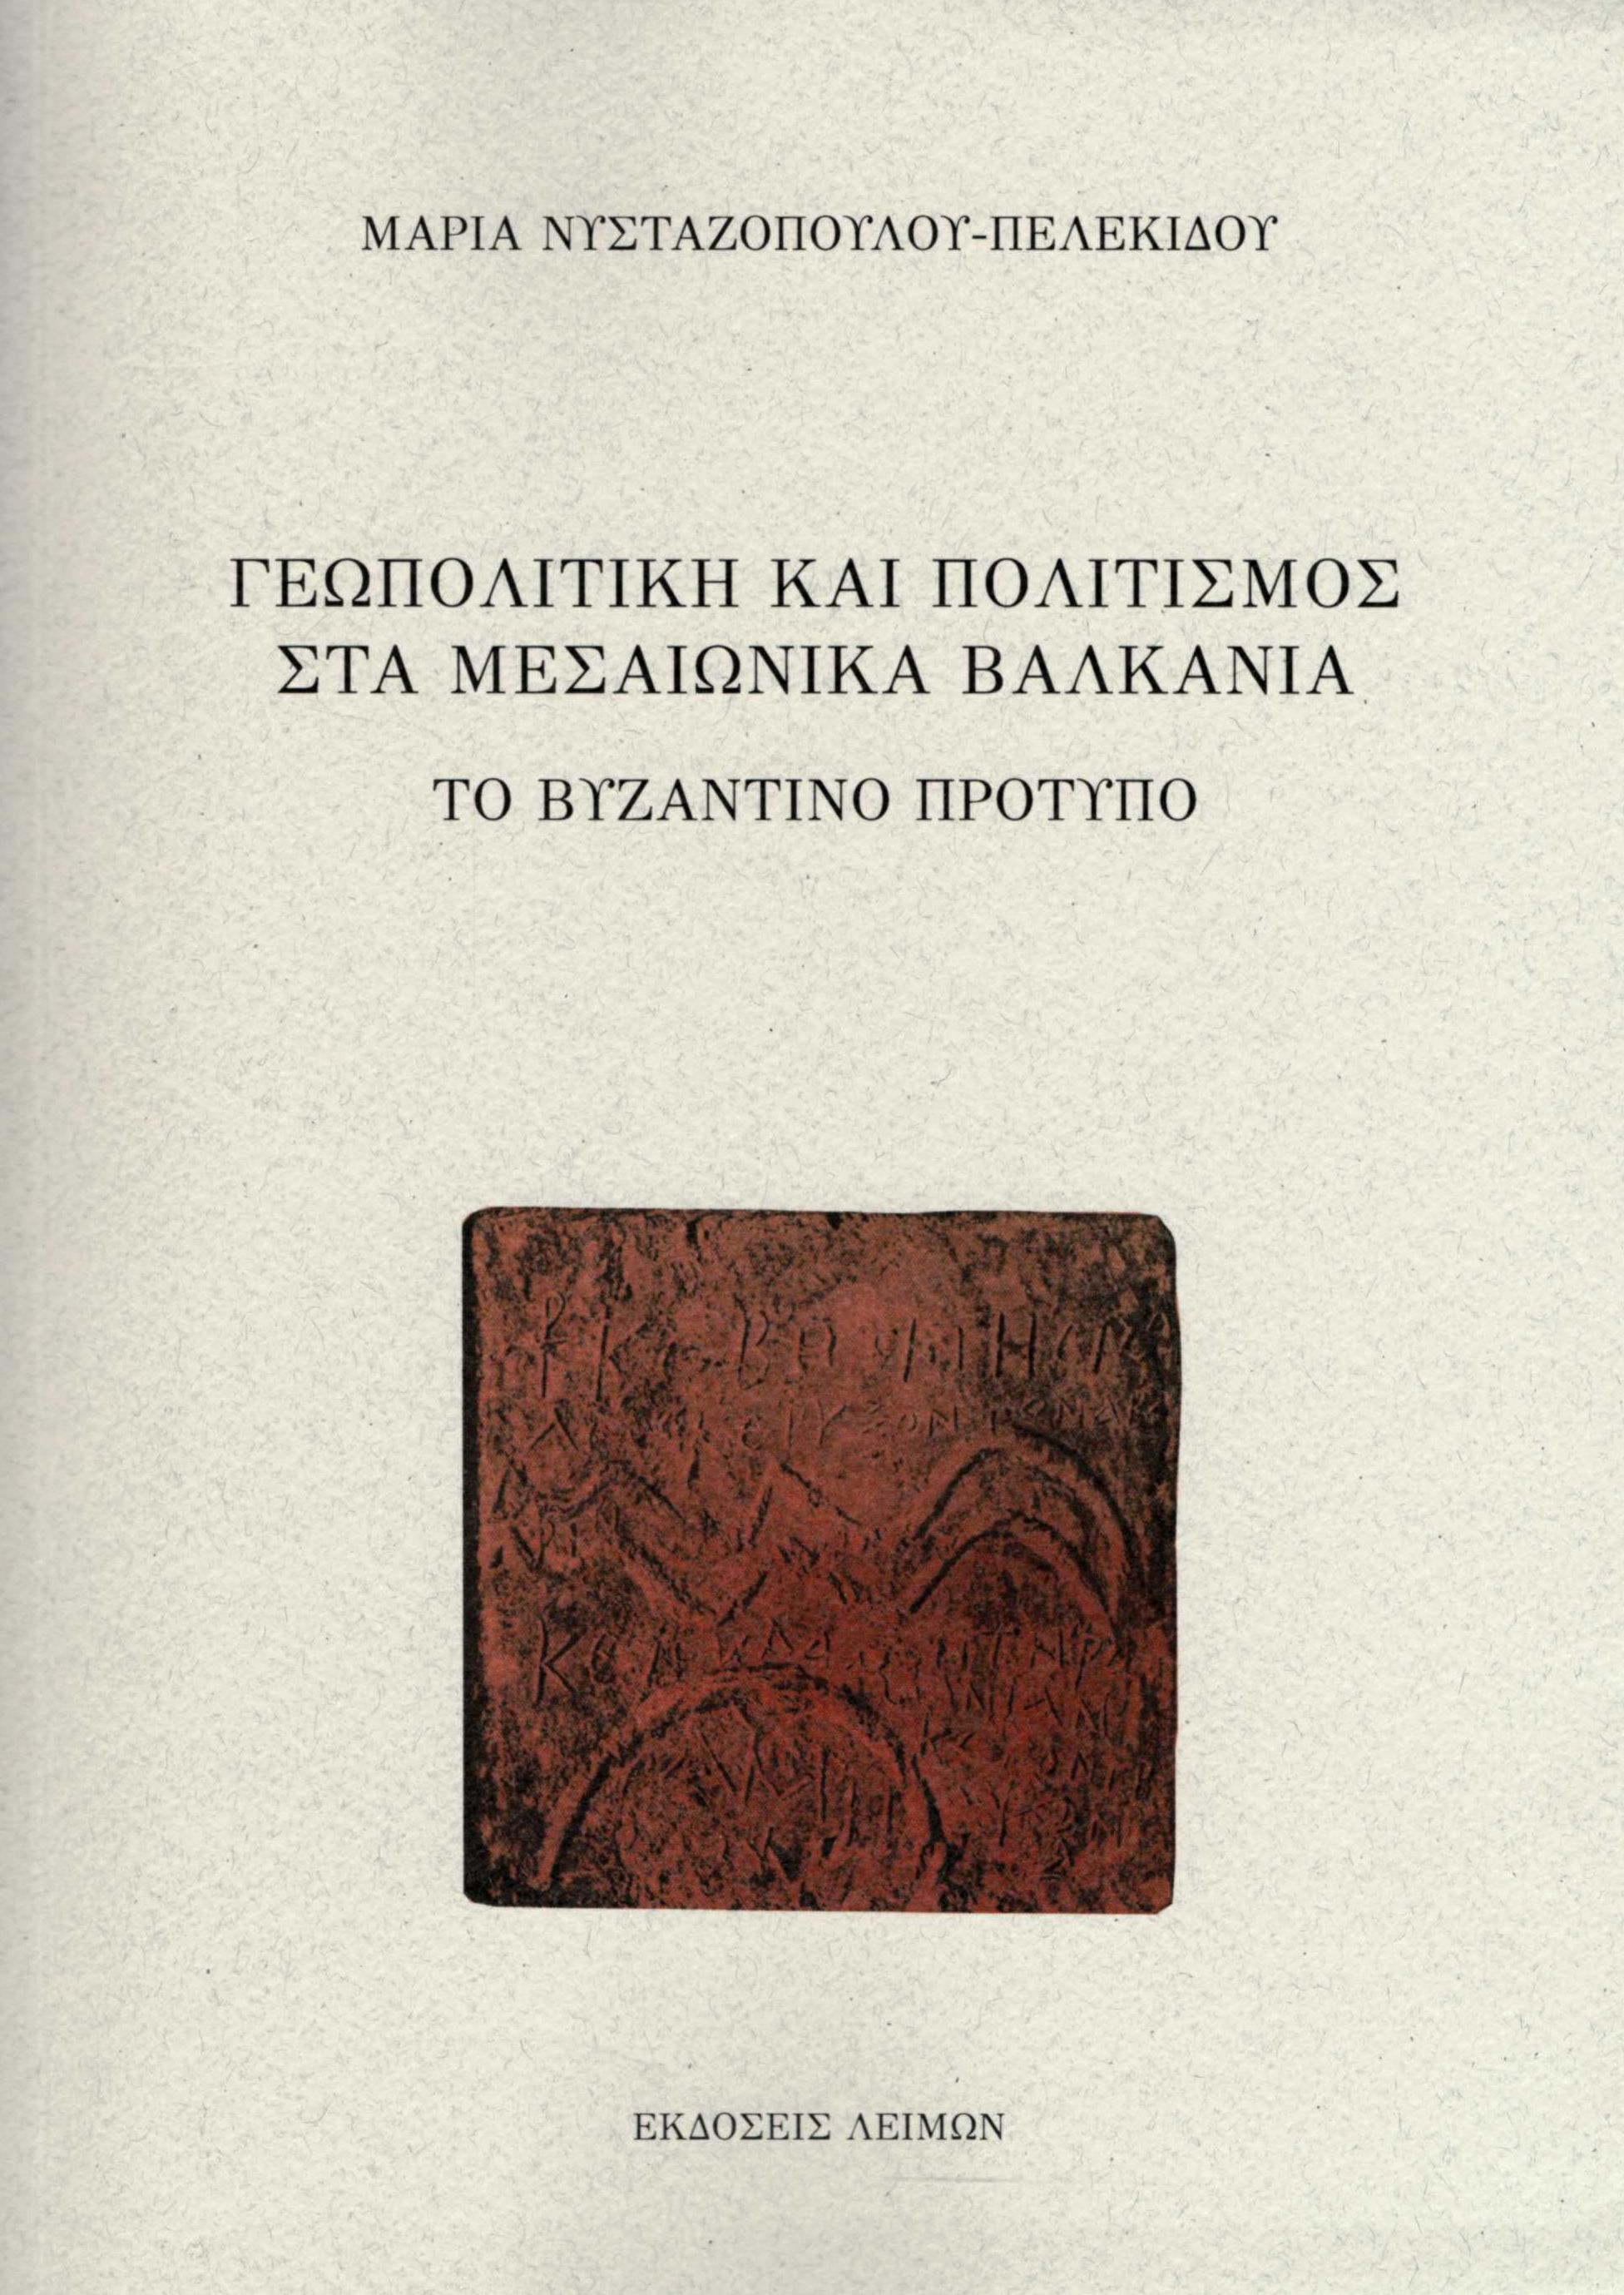 Γεωπολιτική και πολιτισμός στα μεσαιωνικά Βαλκάνια, Το Βυζαντινό πρότυπο, Νυσταζοπούλου - Πελεκίδου, Μαρία, Λειμών, 2021